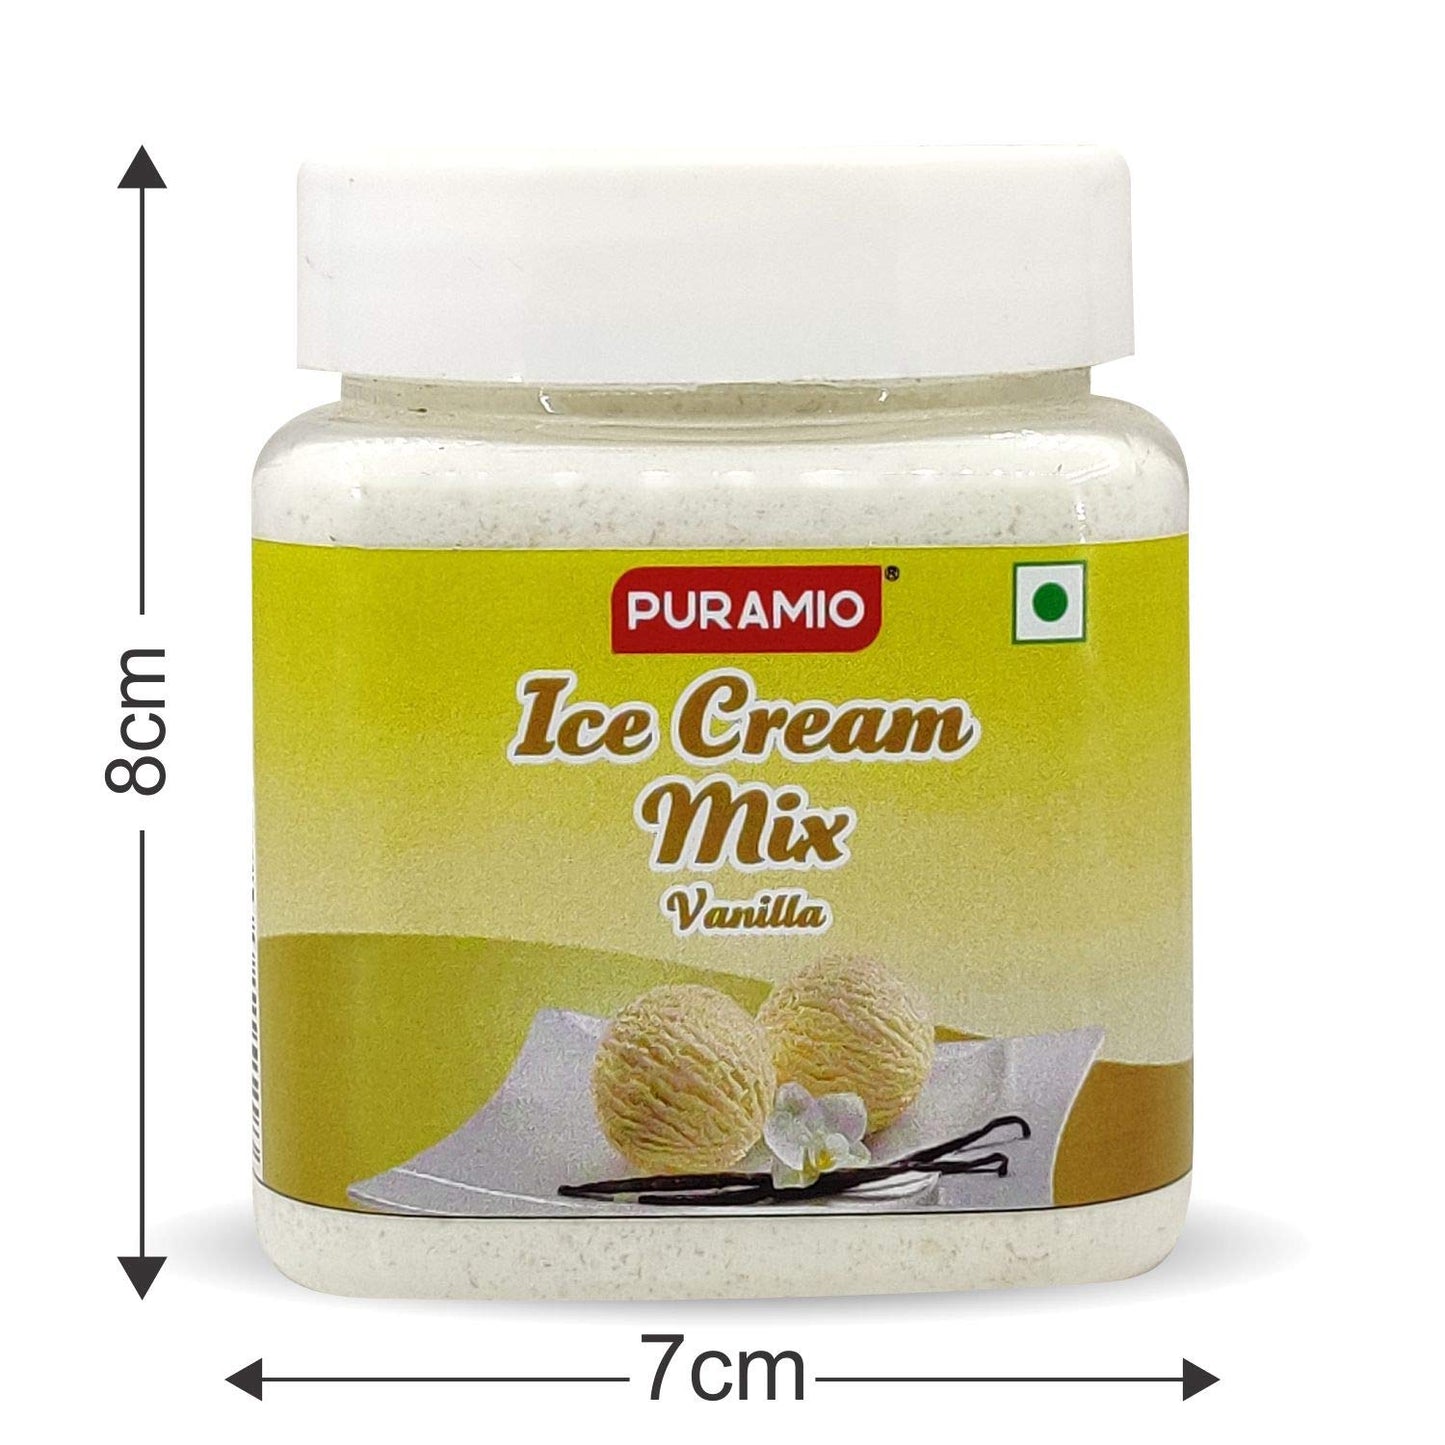 Puramio Ice Cream Mix - Vanilla & Chocolate, Each 250g [Pack of 2]